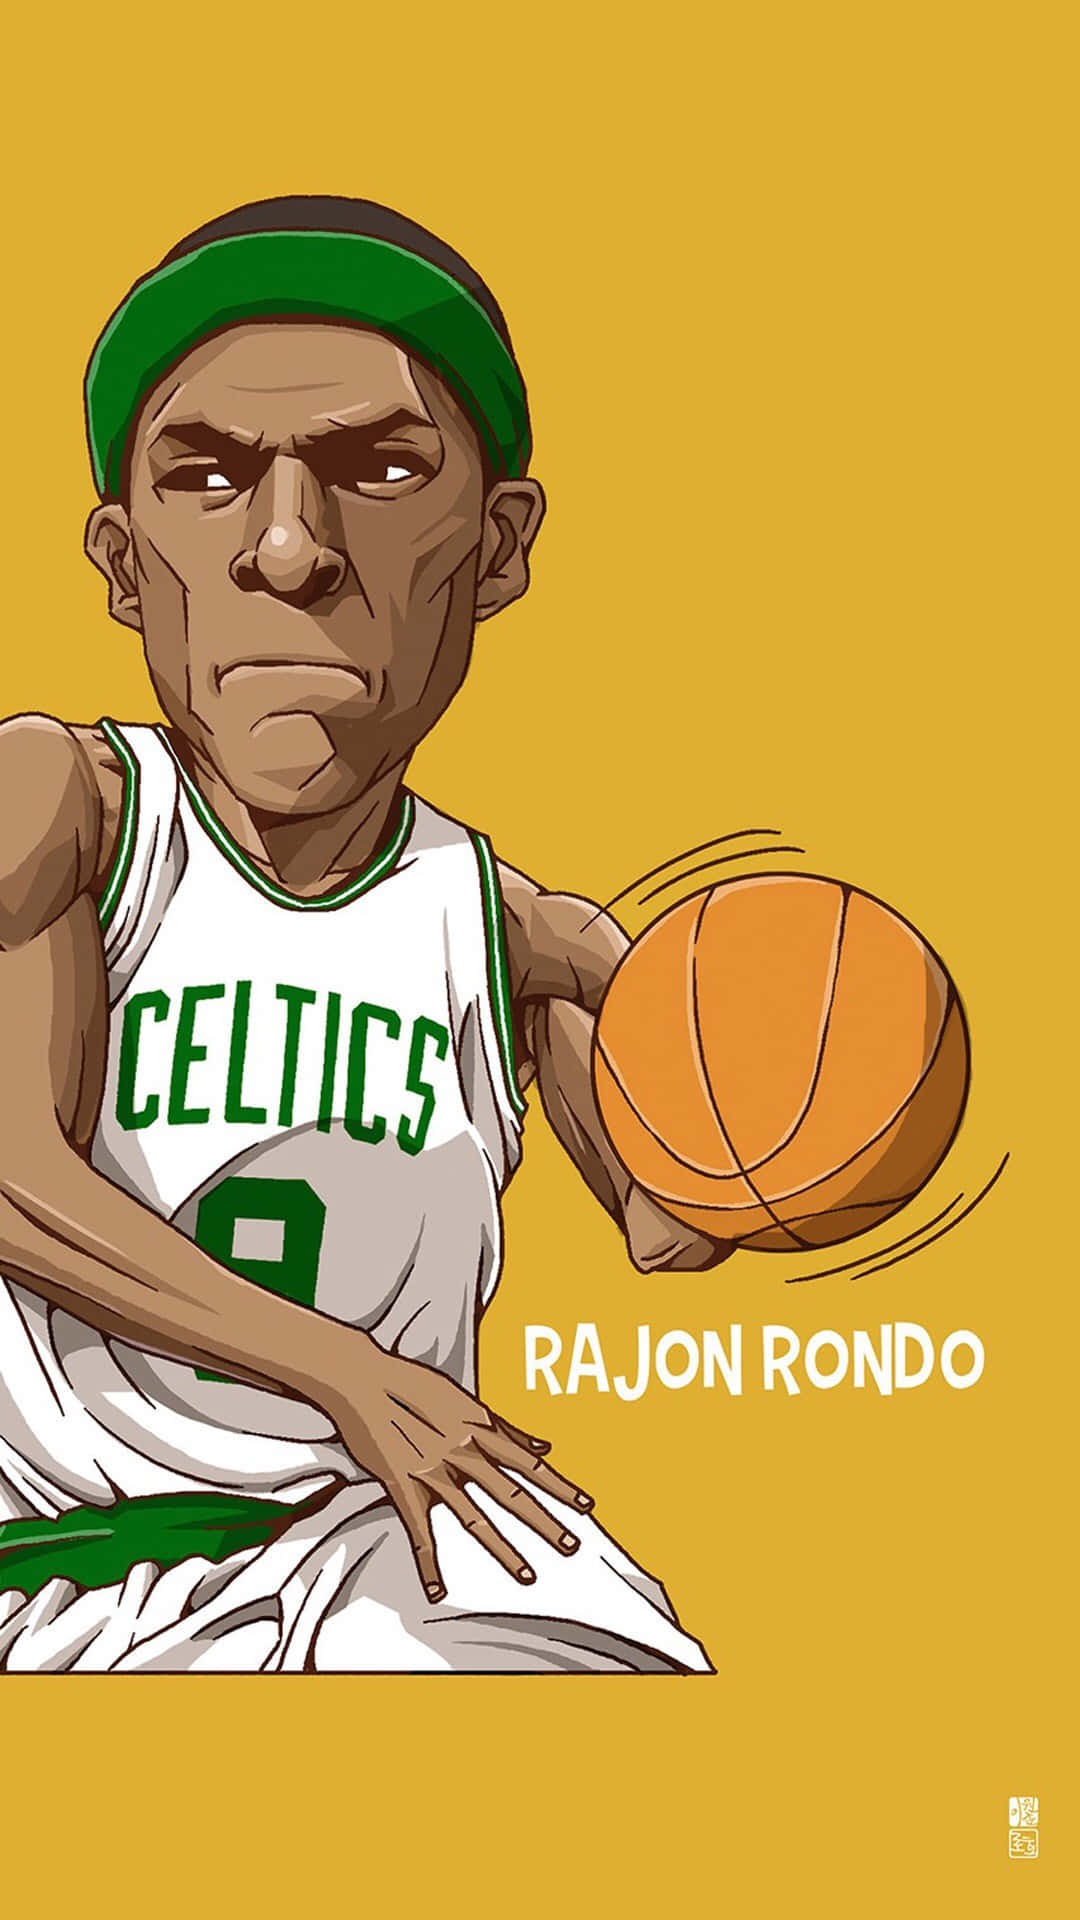 A Cartoon Of A Basketball Player Holding A Ball Wallpaper